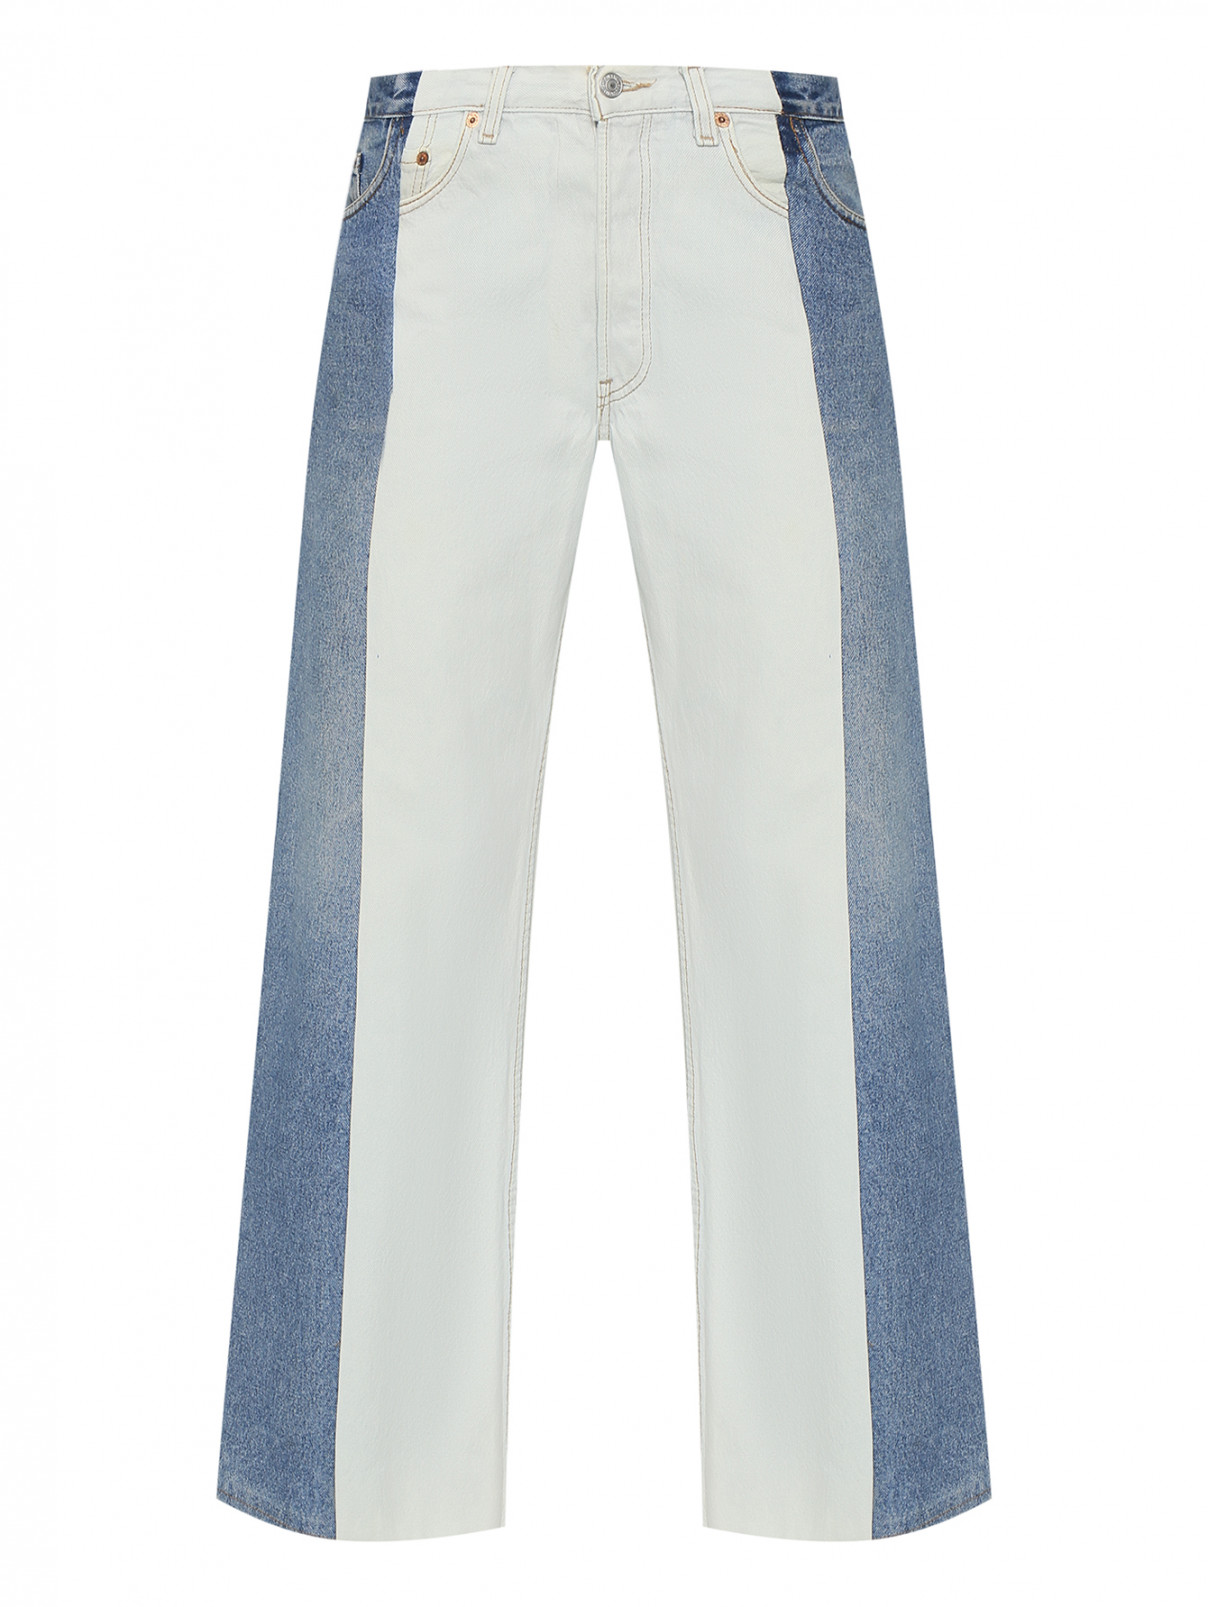 Комбинированные джинсы из голубого и синего денима Ombra  –  Общий вид  – Цвет:  Синий